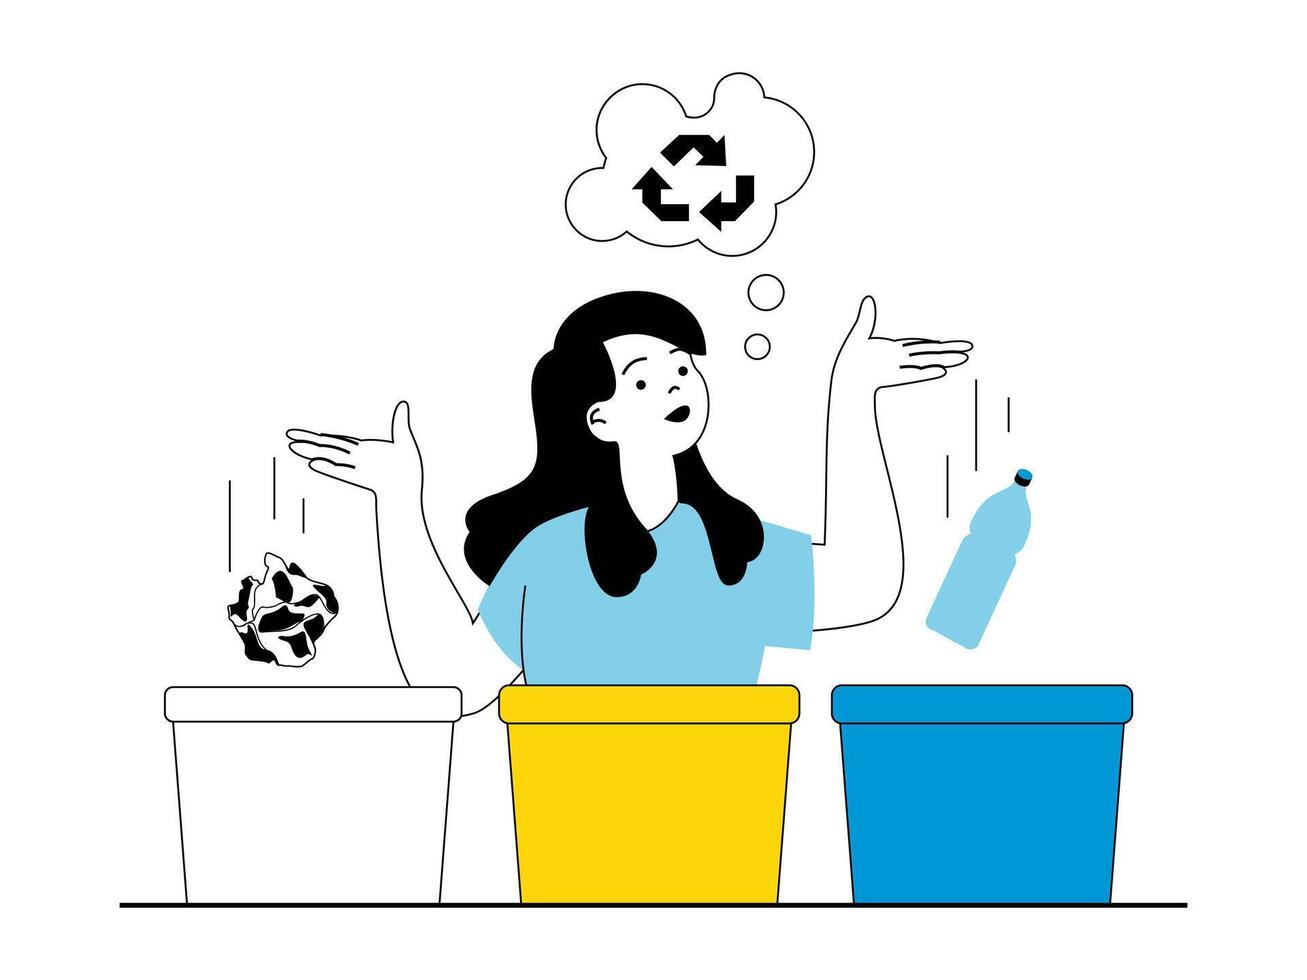 noll avfall begrepp med karaktär situation. kvinna samlar, sorterar och separerar sopor in i särskild behållare för återvinning och återanvändning. vektor illustration med människor scen i platt design för webb